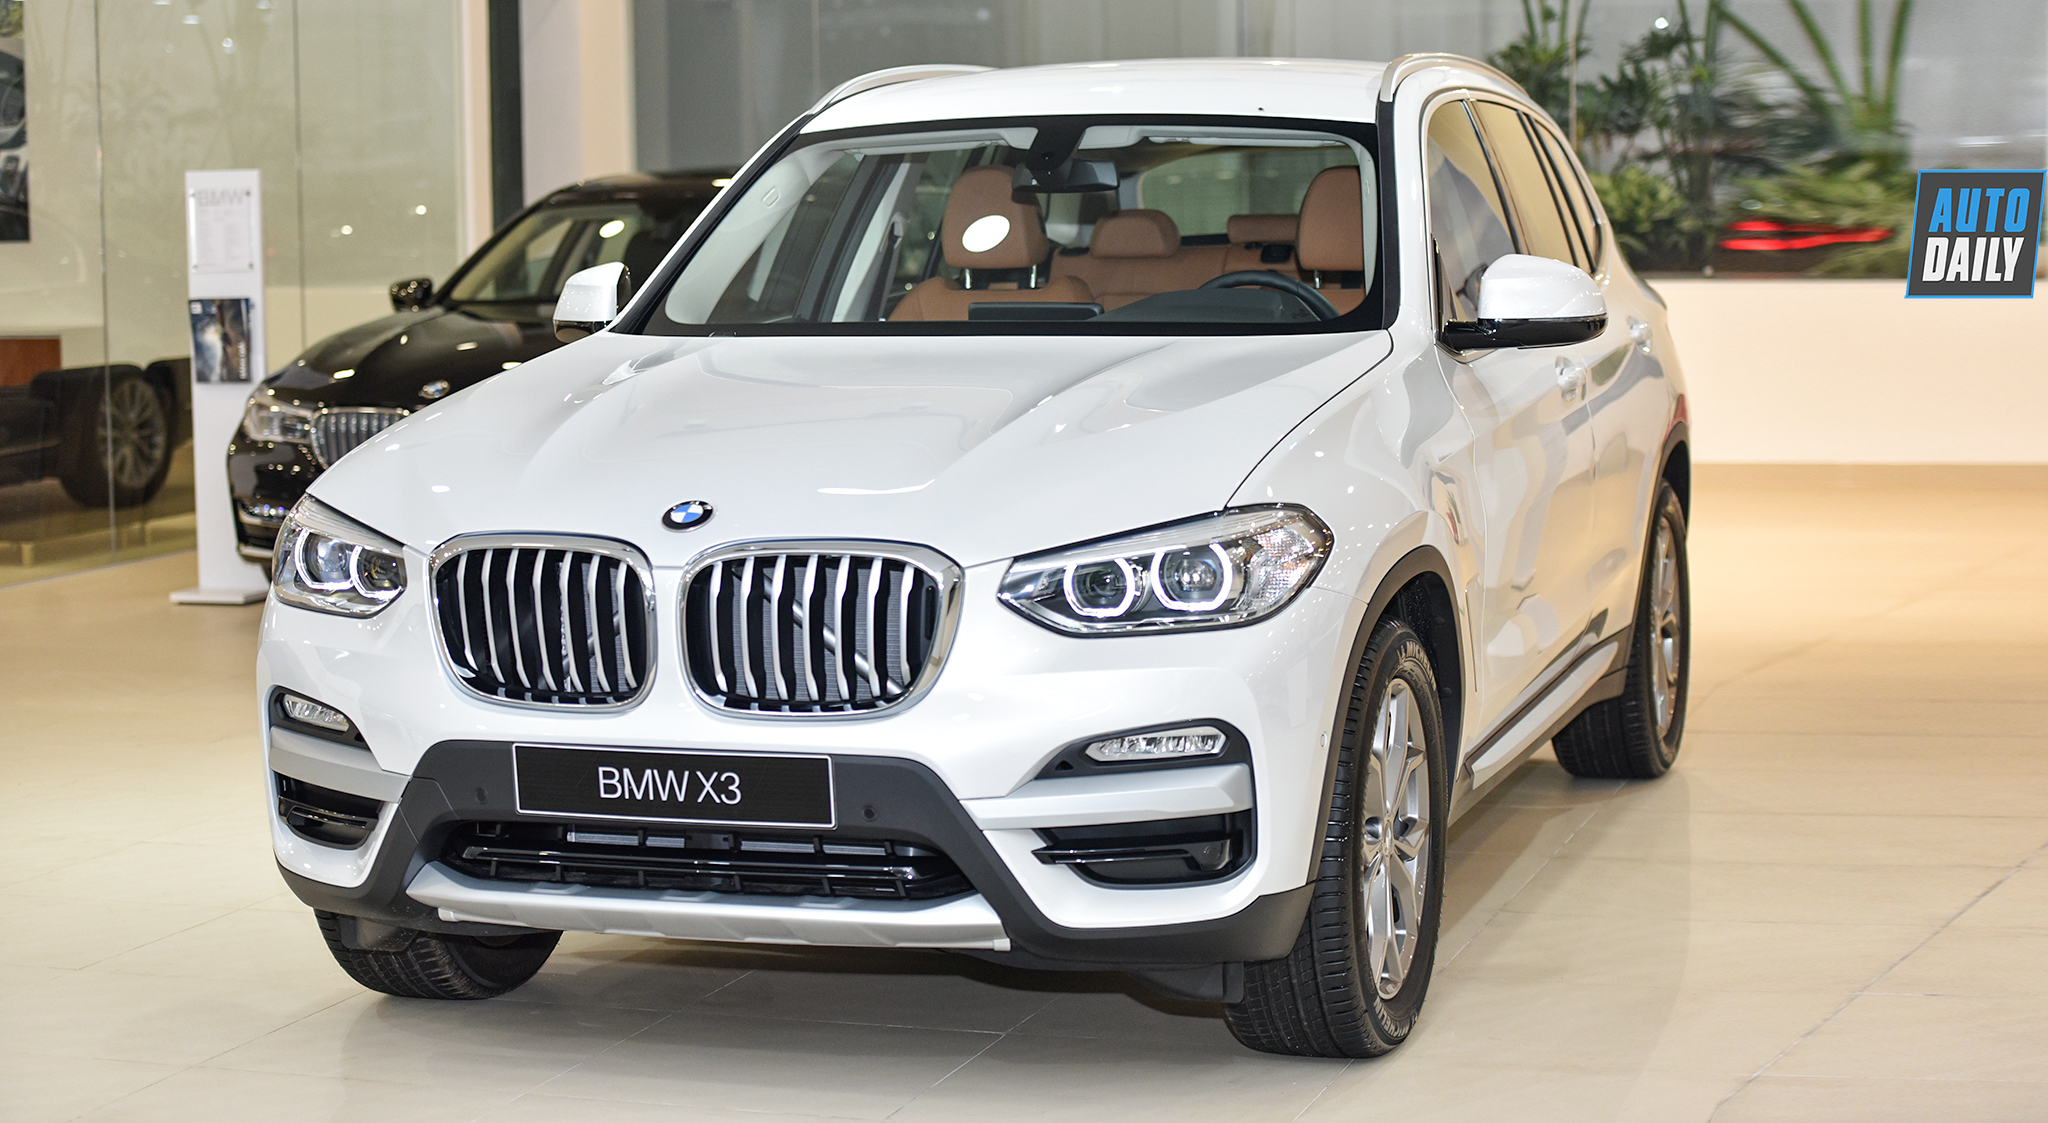 Cận cảnh BMW X3 2019 giá từ 2,529 tỷ đồng tại Việt Nam